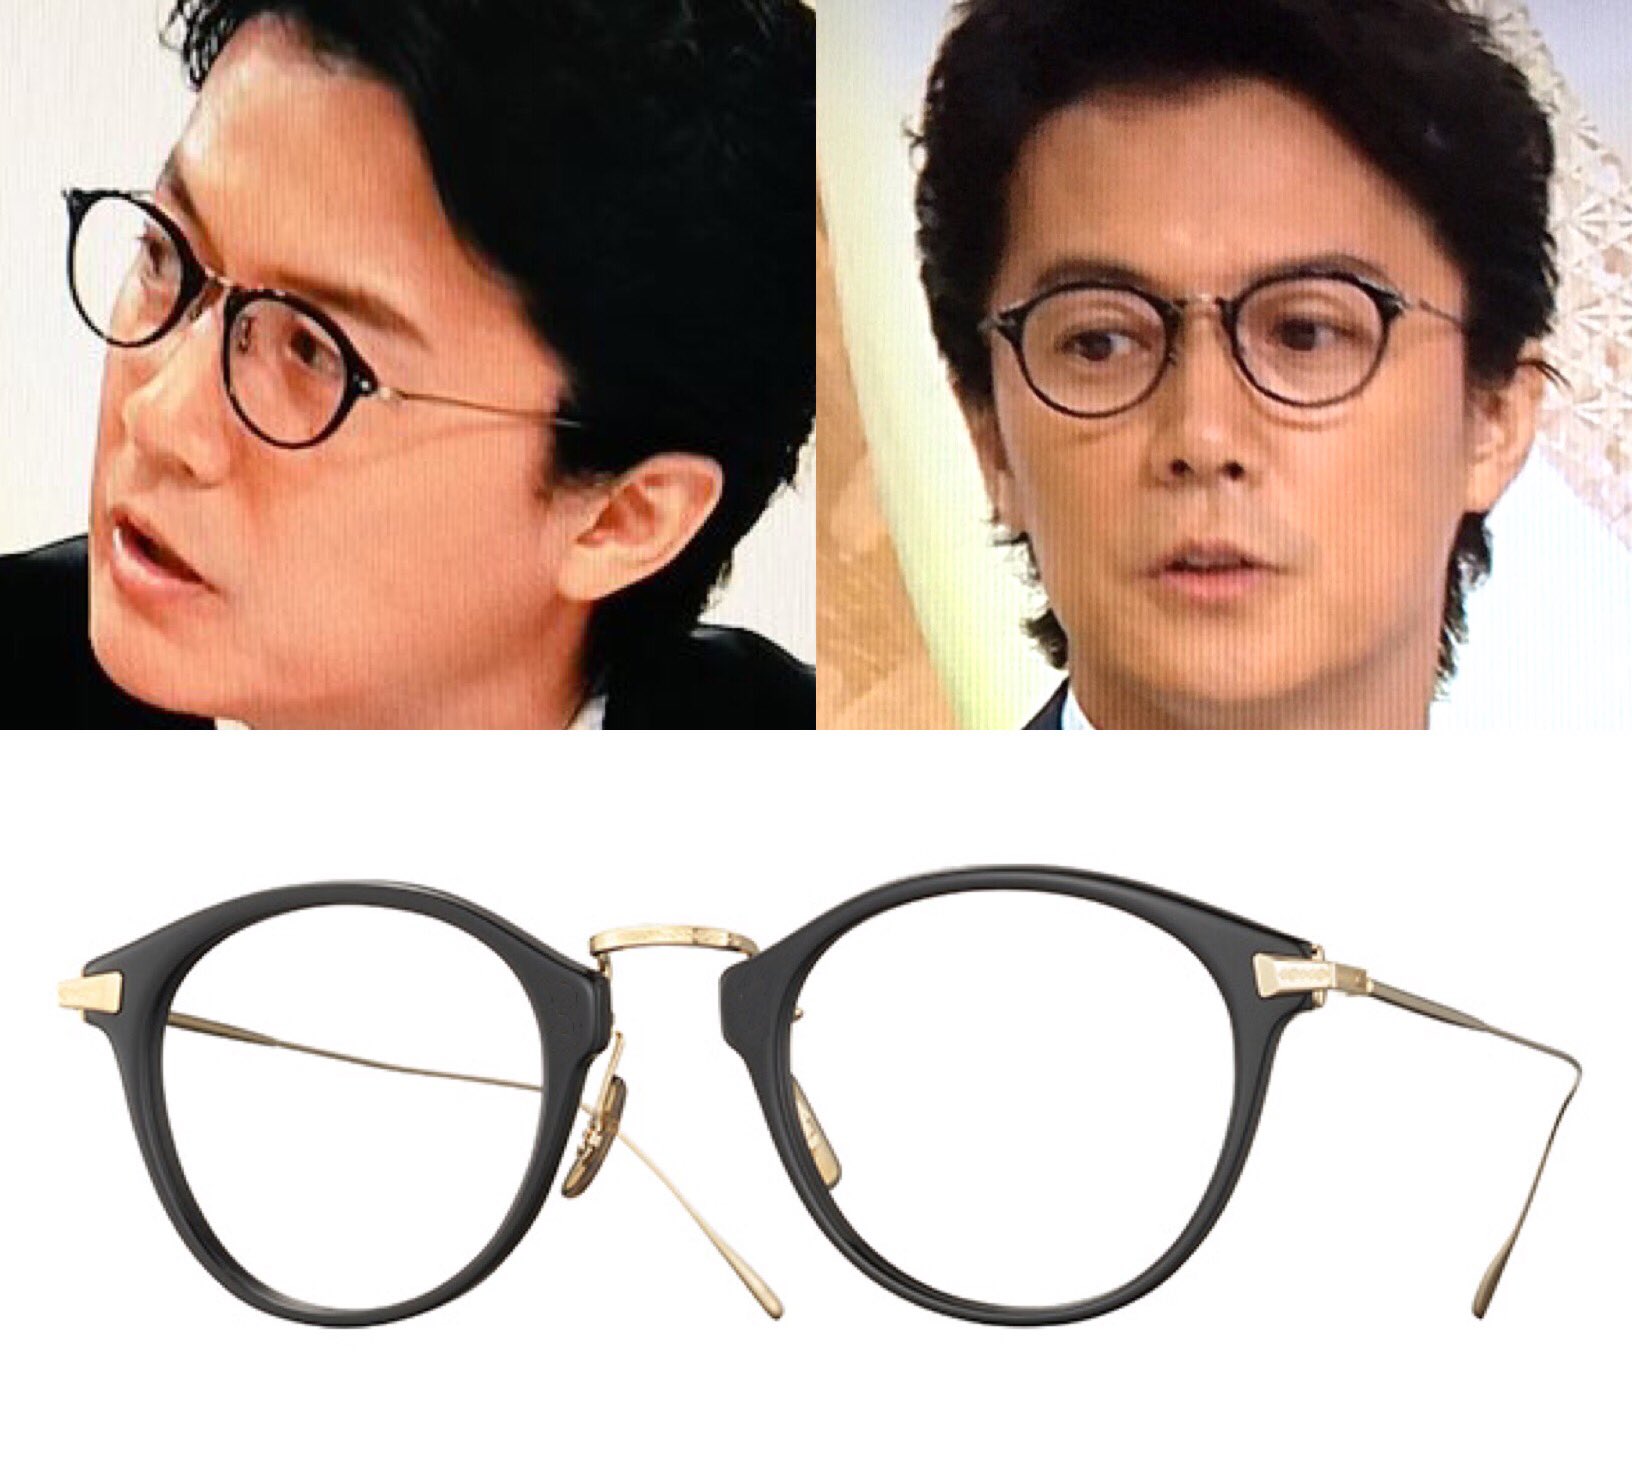 34 on Twitter: "福山さんのスーツにメガネがとっても素敵！ メガネはオリバーピープルズかな？ #BROS1991…